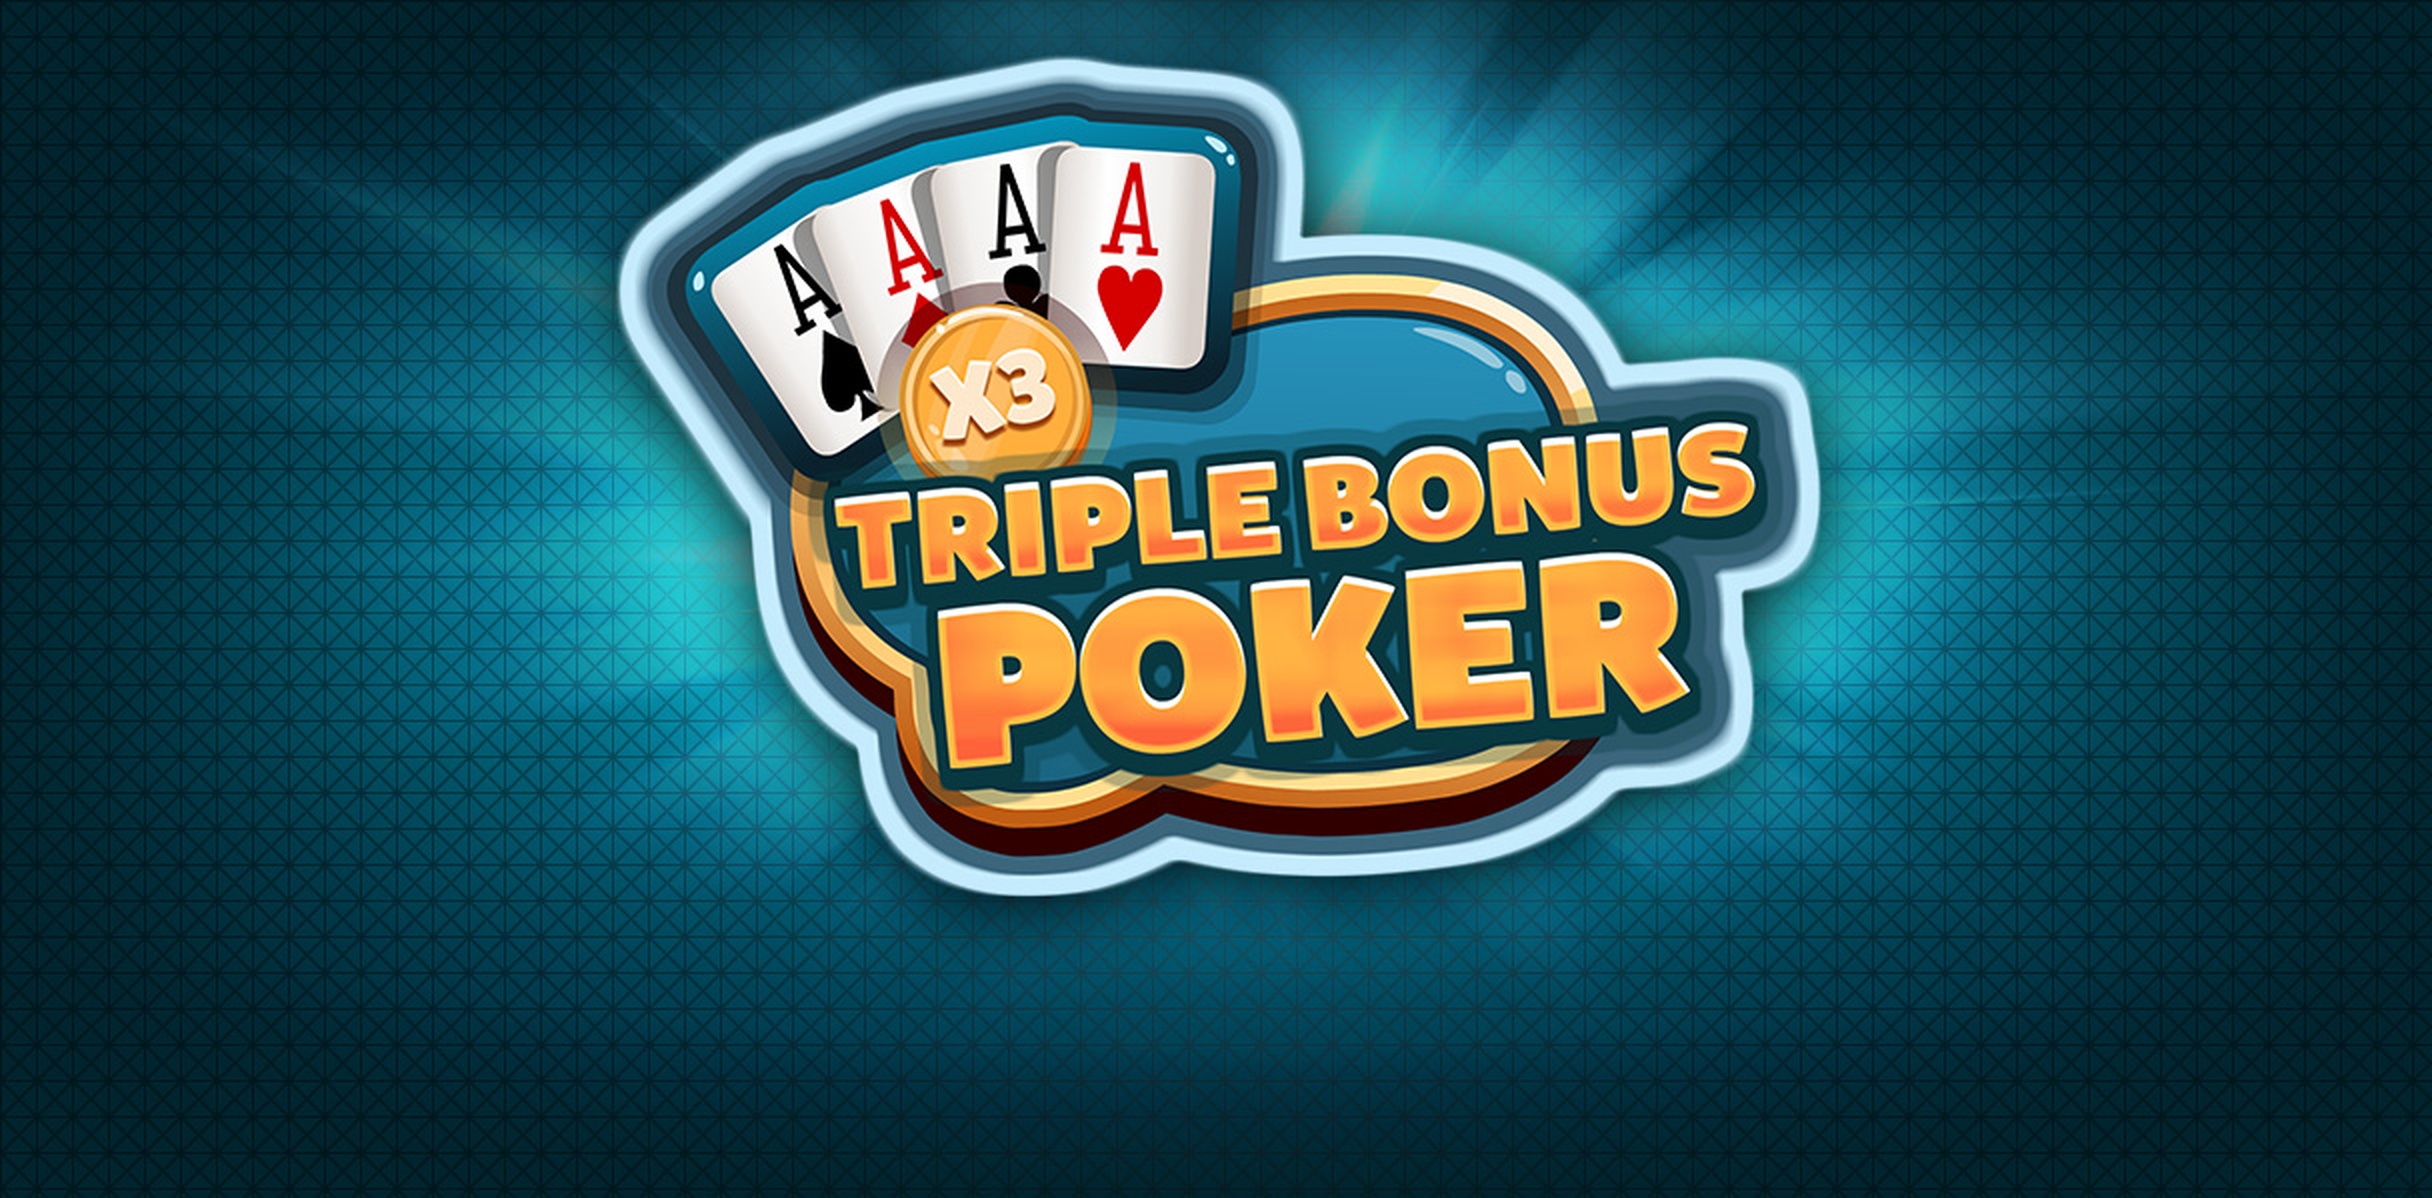 Triple Bonus Poker demo